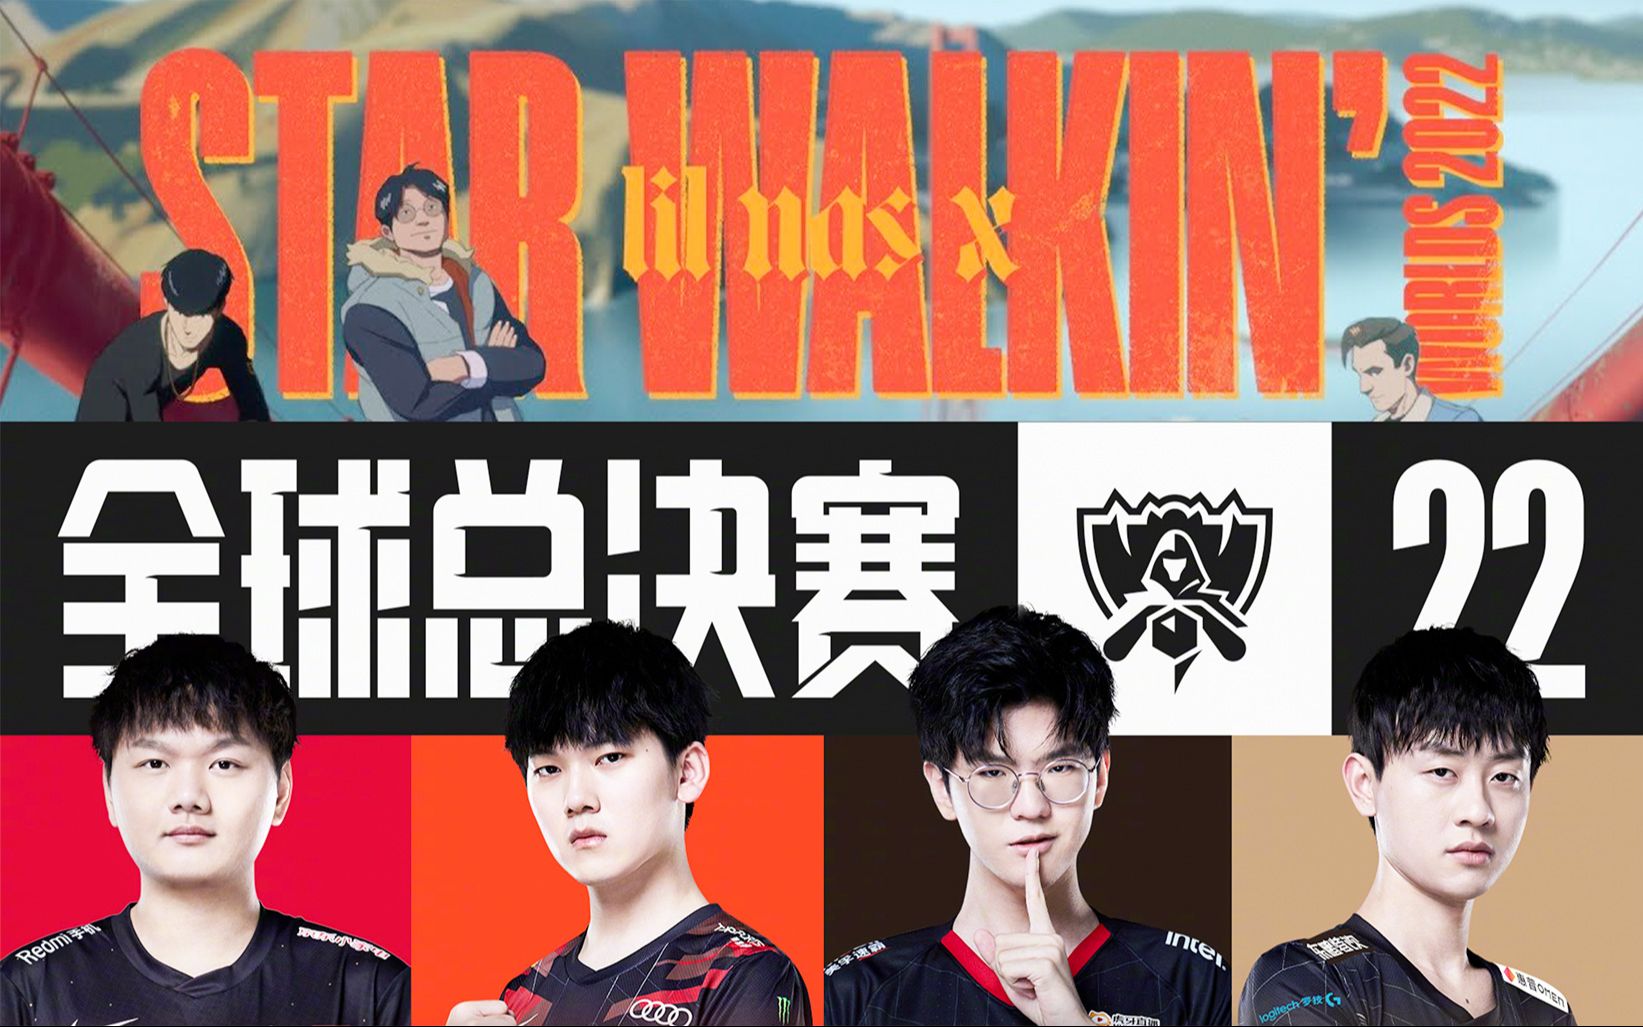 【英雄联盟S12】2022全球总决赛主题曲《STAR WALKIN'》